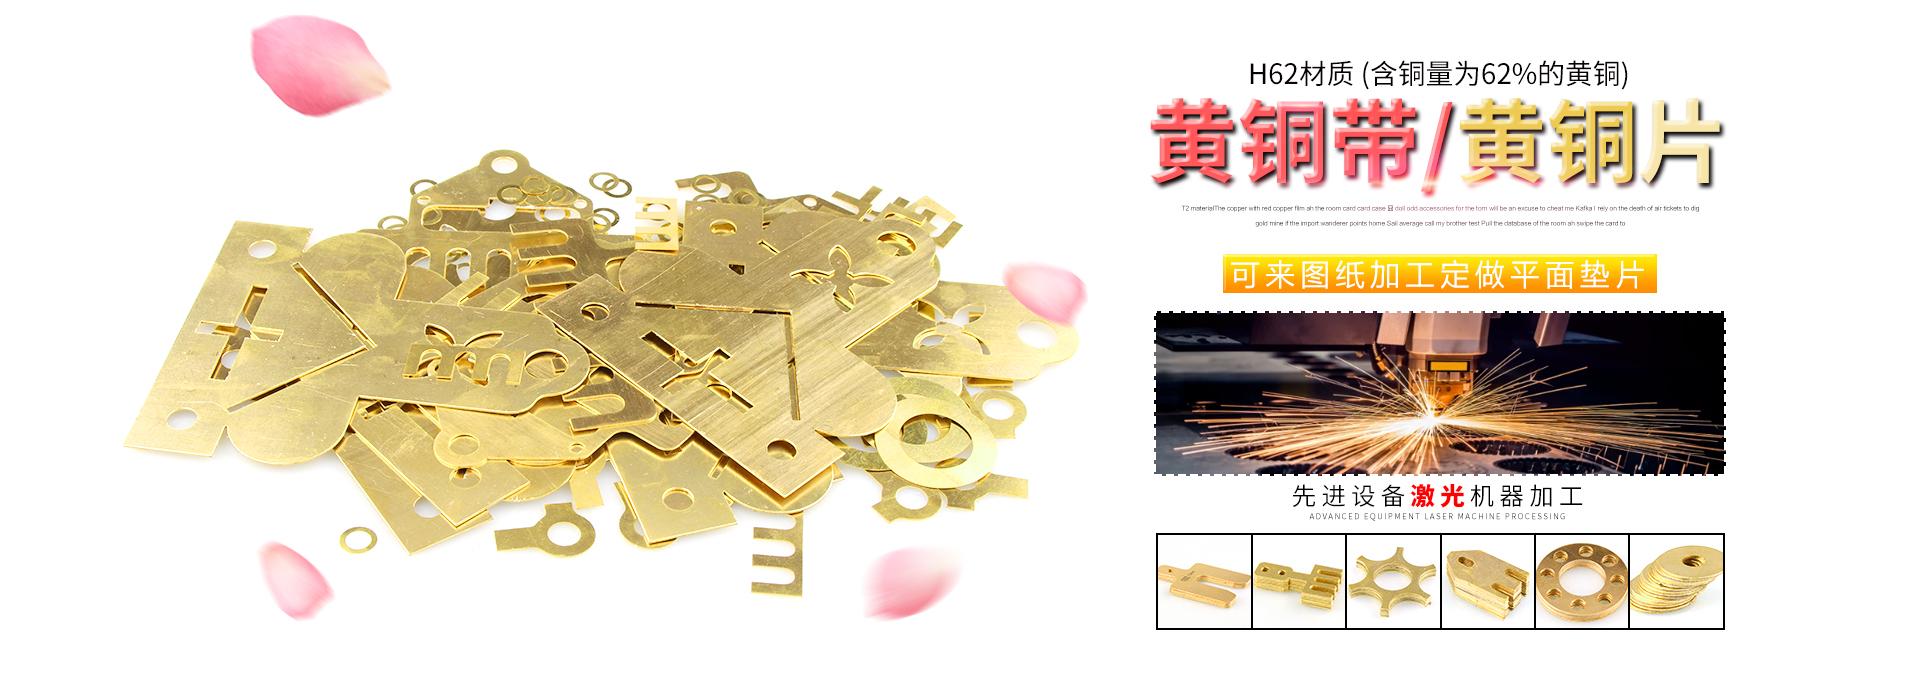 H62/H59黃銅帶價格、黃銅帶廠家、黃銅板價格、t2紫銅帶價格